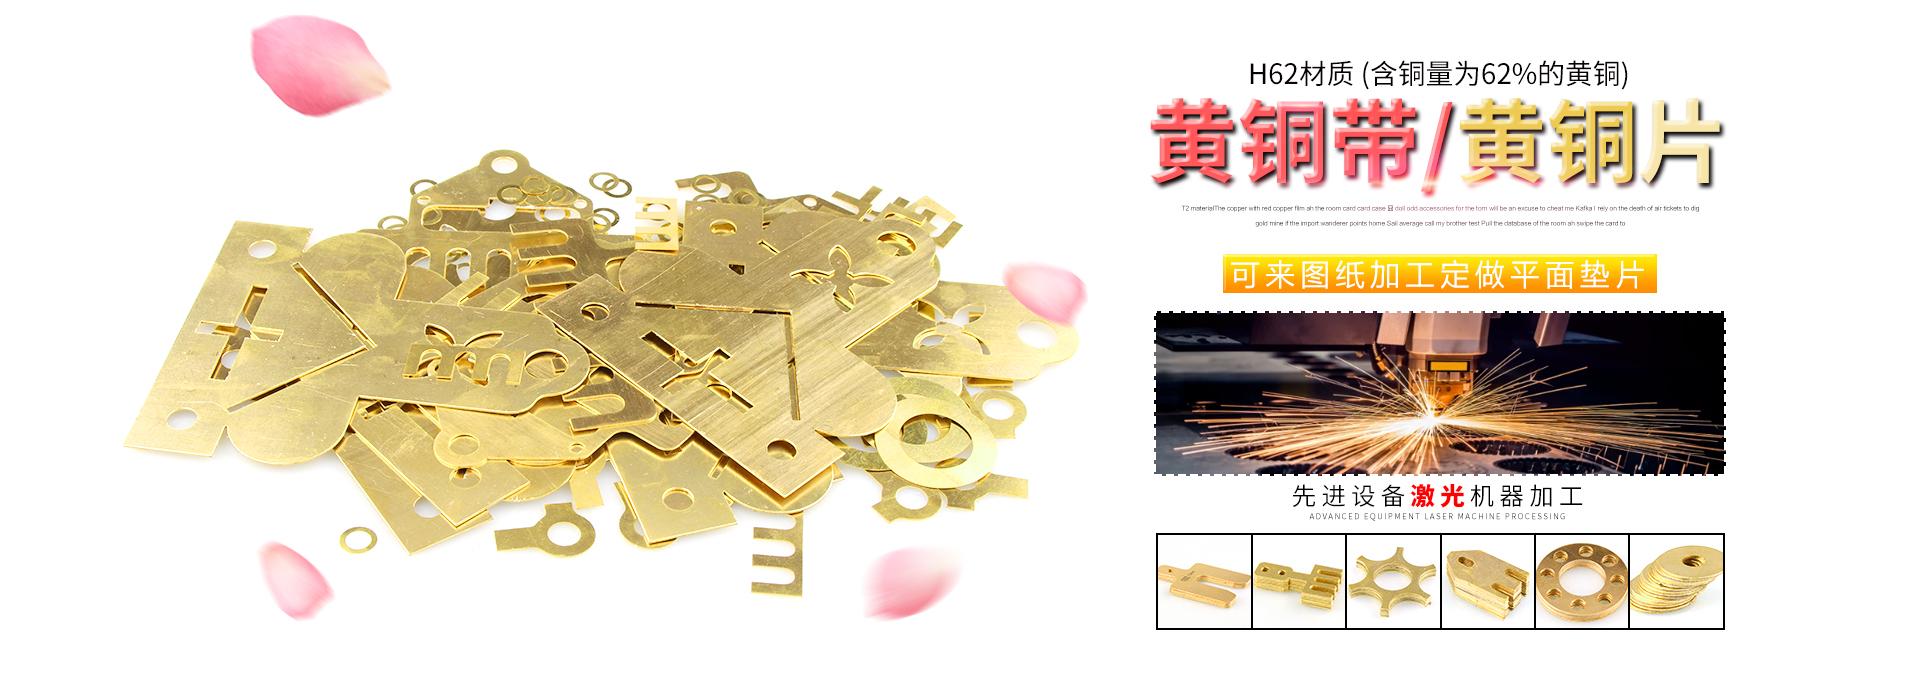 H62/H59黃銅帶價格、黃銅帶廠家、黃銅板價格、t2紫銅帶價格